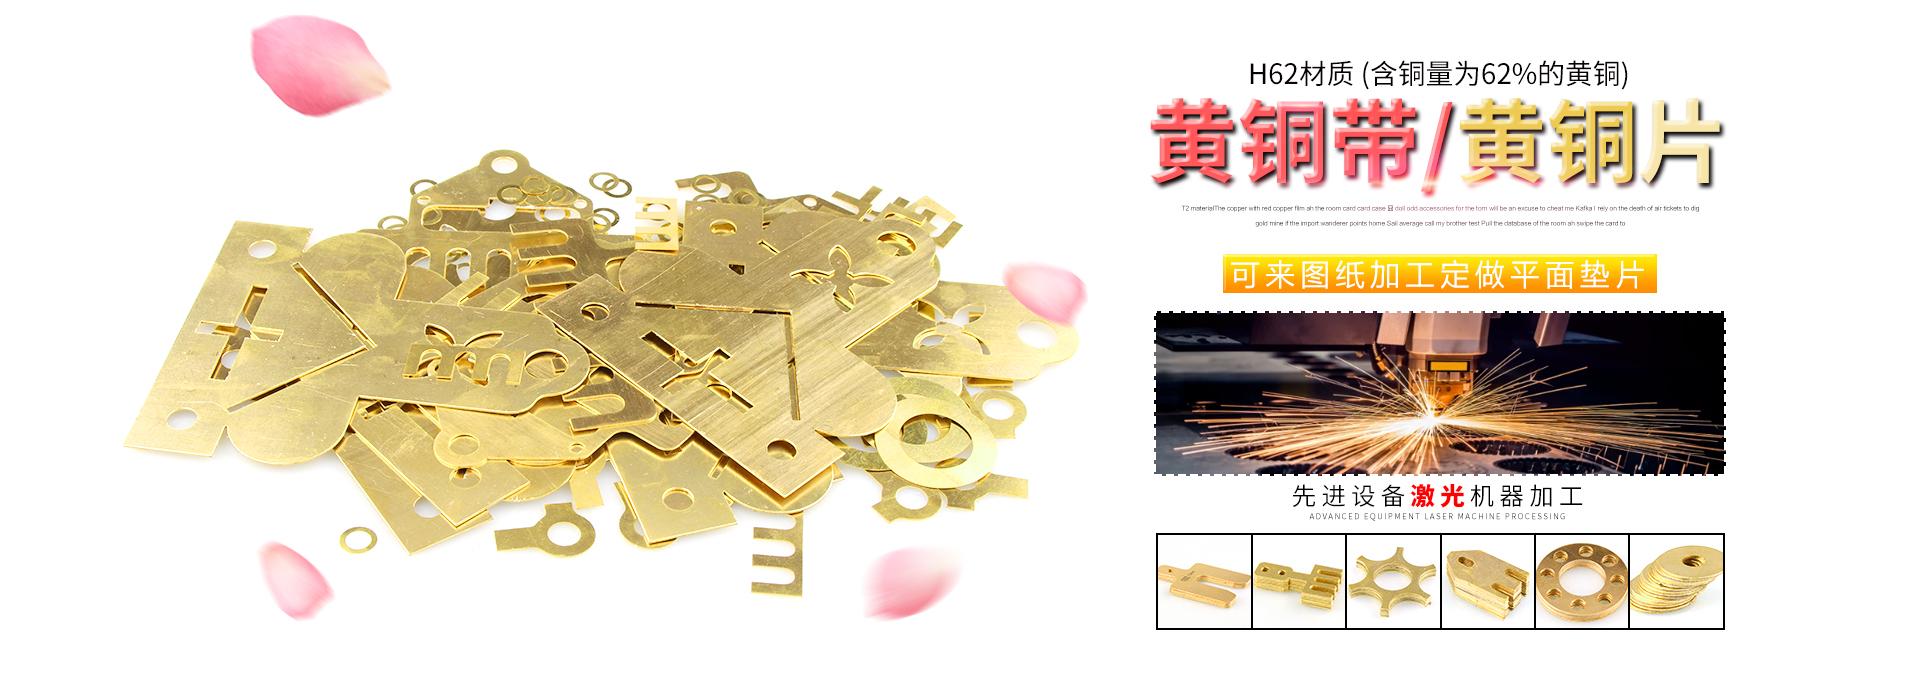 H62/H59黃銅帶價格、黃銅帶廠家、黃銅板價格、t2紫銅帶價格